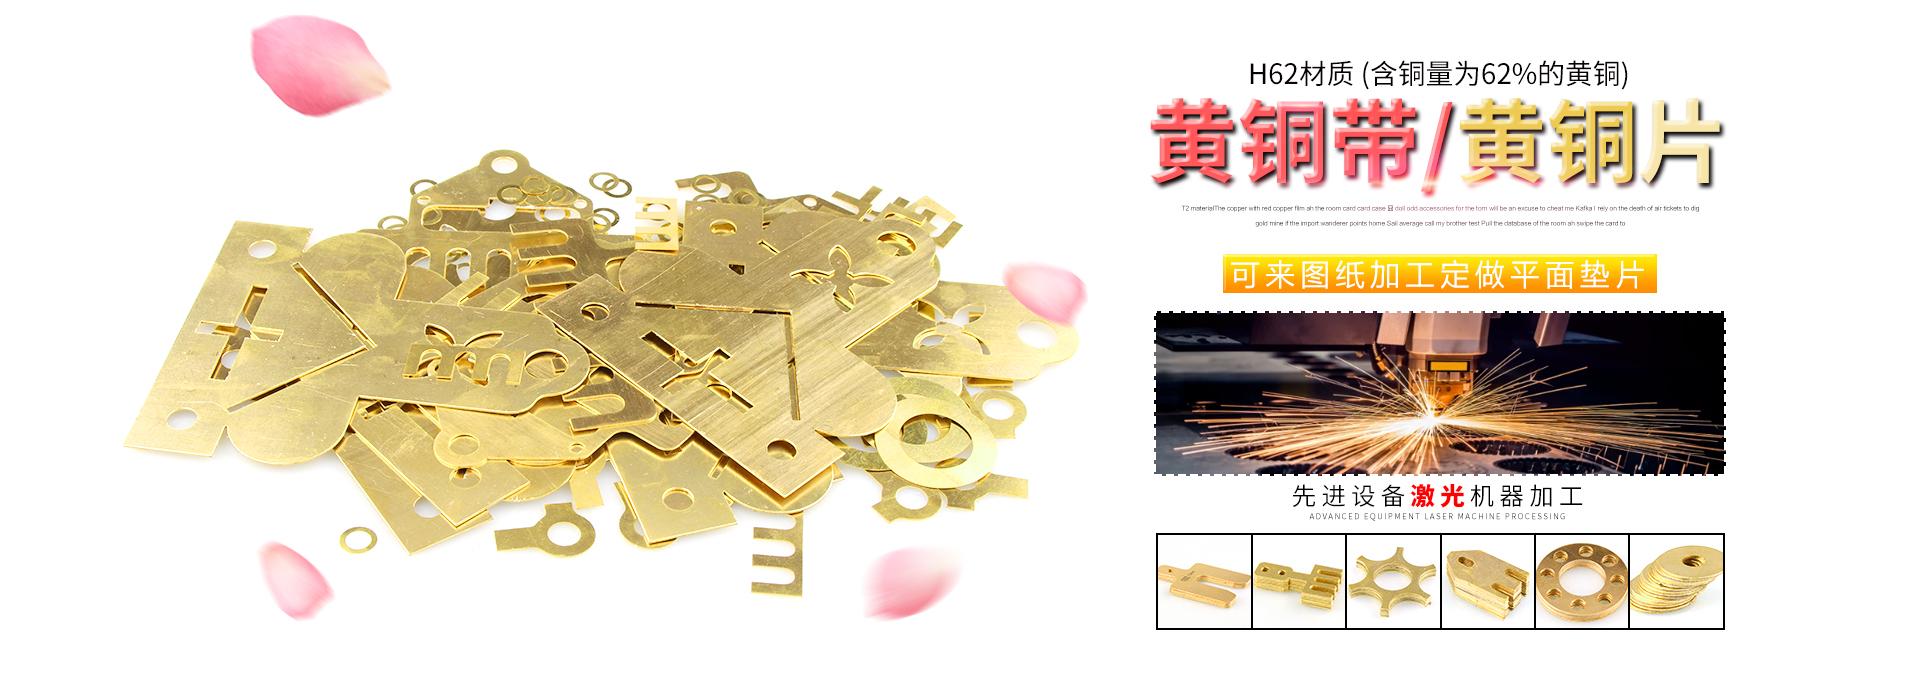 H62/H59黃銅帶價格、黃銅帶廠家、黃銅板價格、t2紫銅帶價格